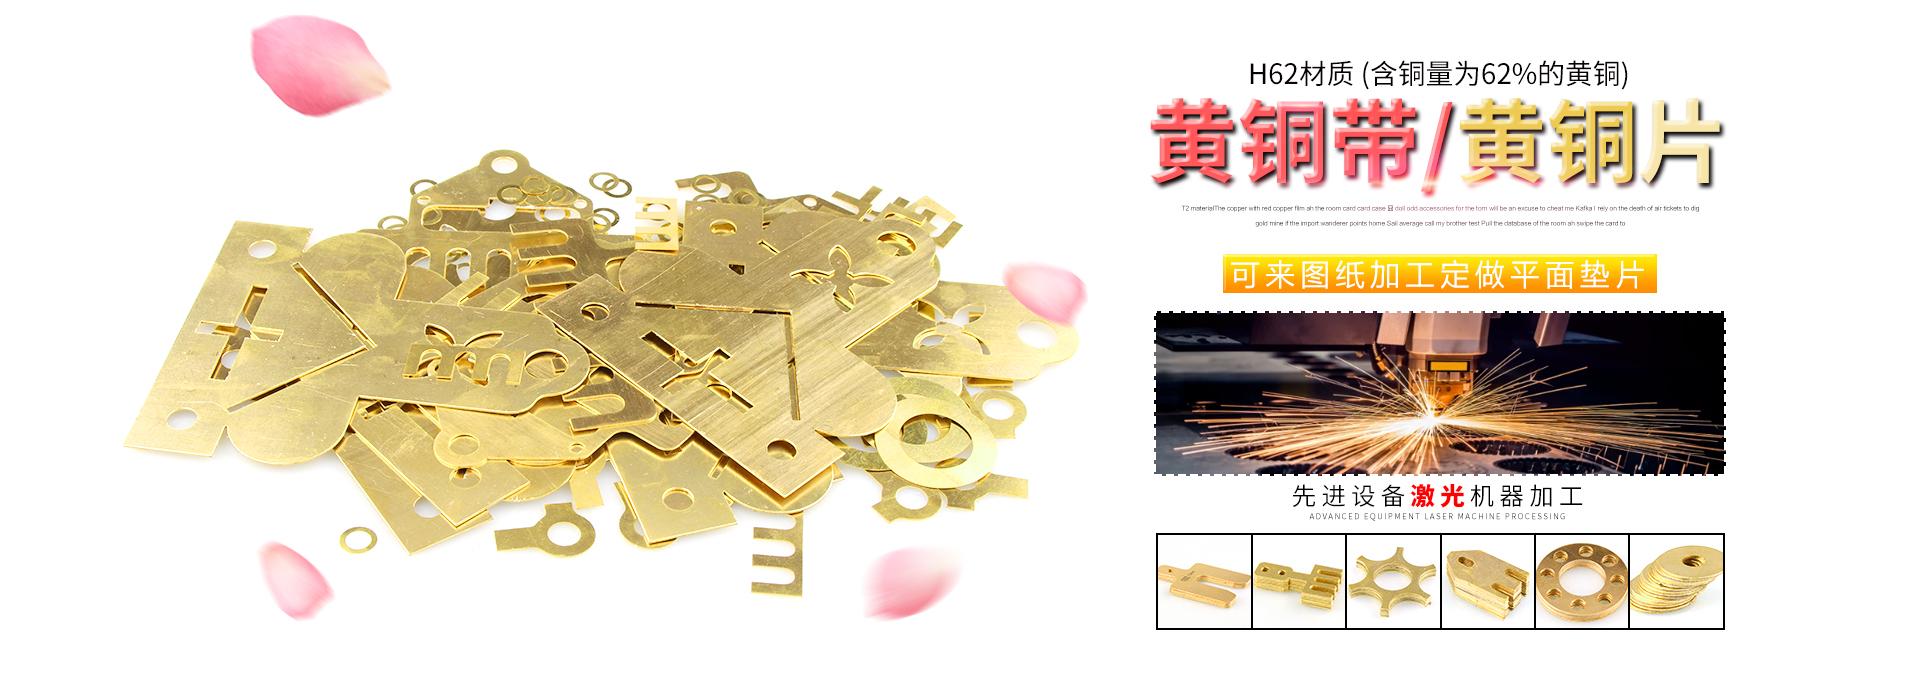 H62/H59黃銅帶價格、黃銅帶廠家、黃銅板價格、t2紫銅帶價格